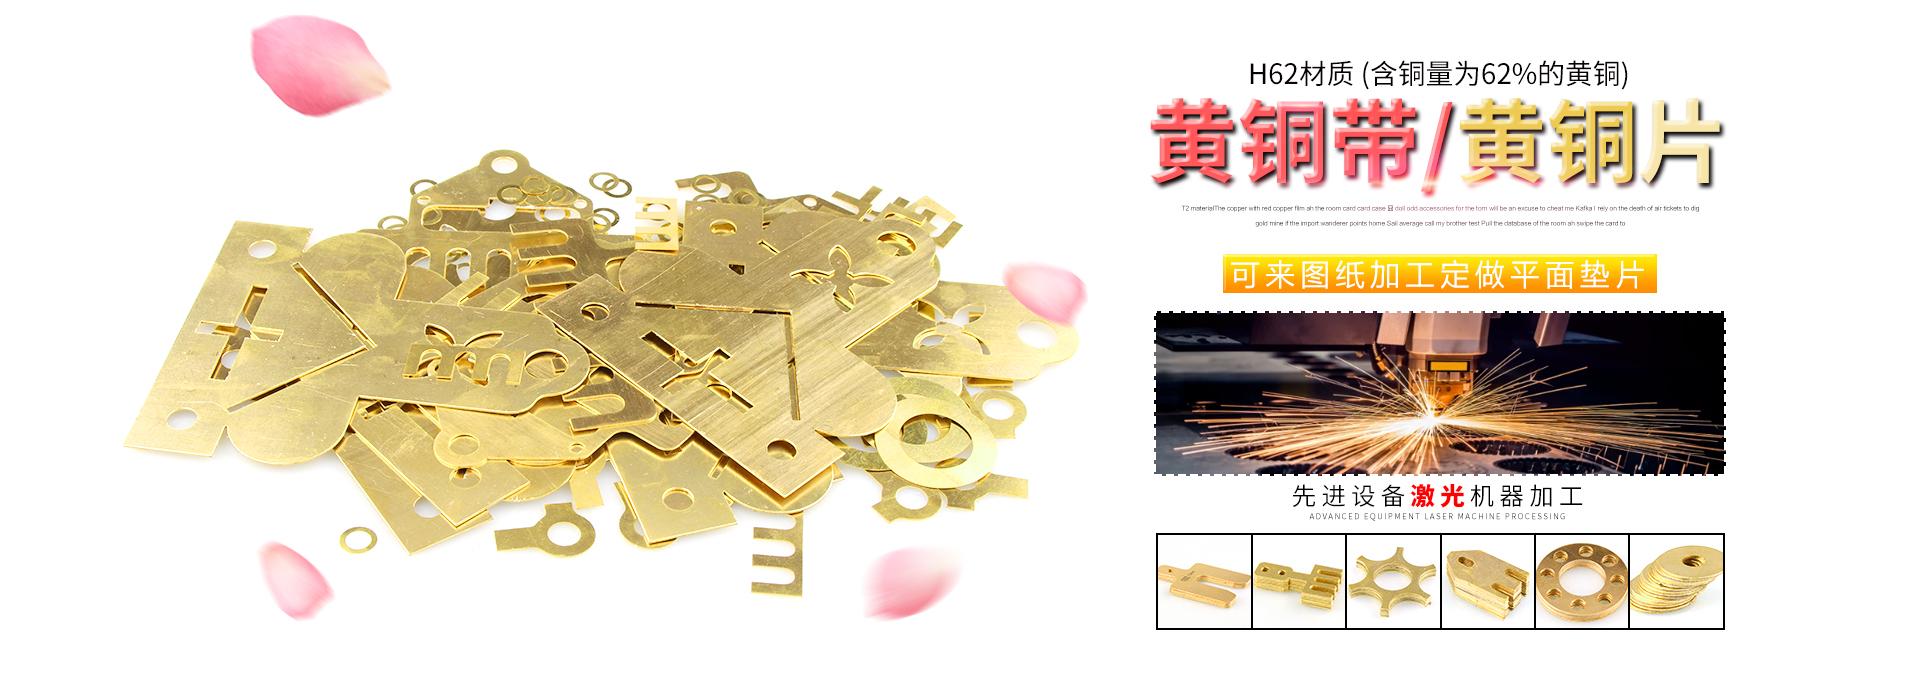 H62/H59黃銅帶價格、黃銅帶廠家、黃銅板價格、t2紫銅帶價格